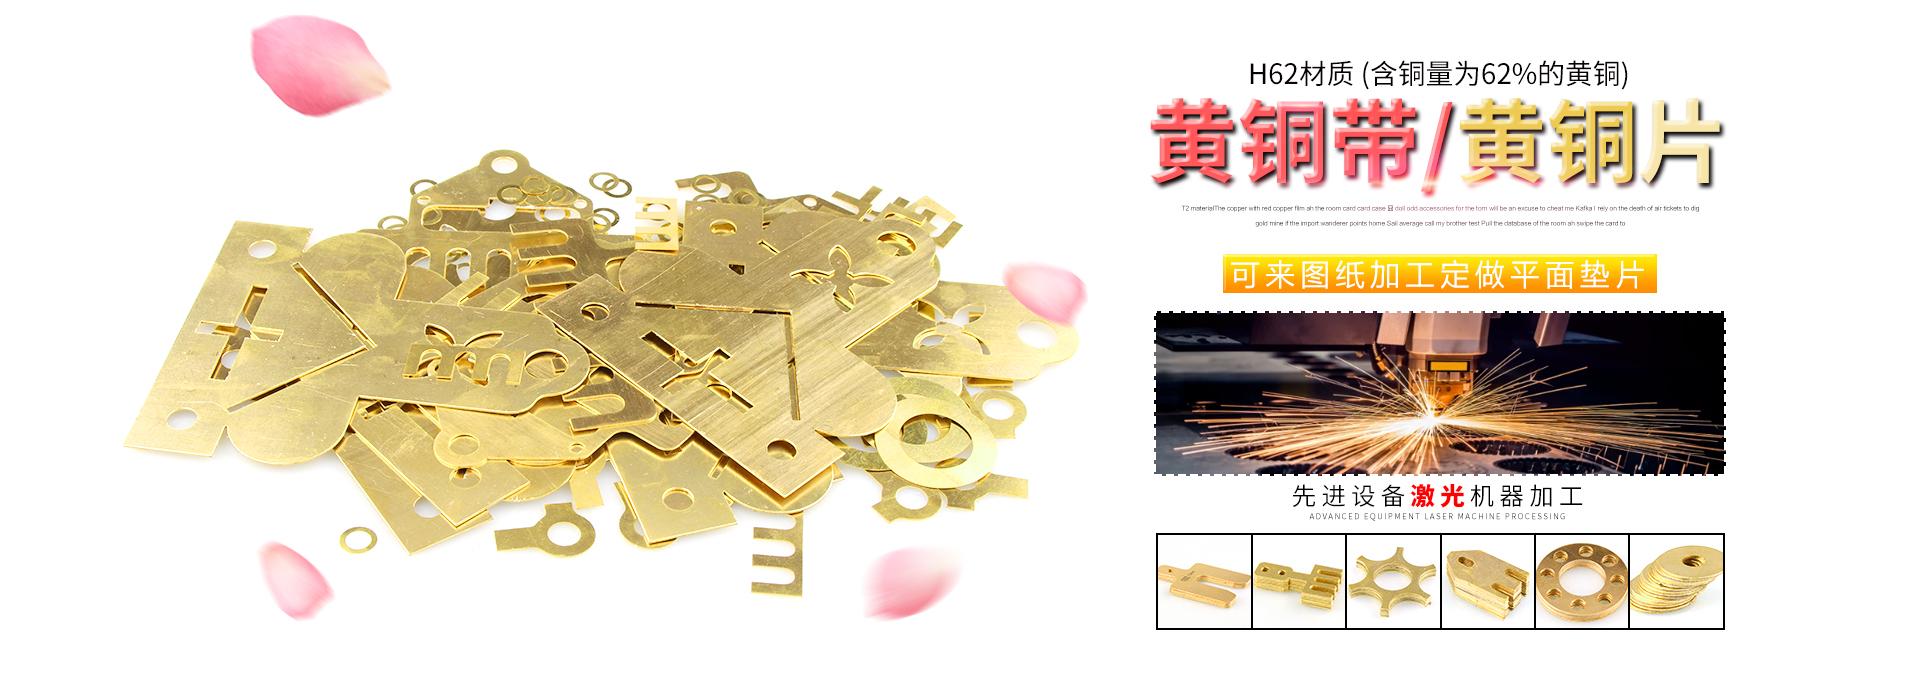 H62/H59黃銅帶價格、黃銅帶廠家、黃銅板價格、t2紫銅帶價格